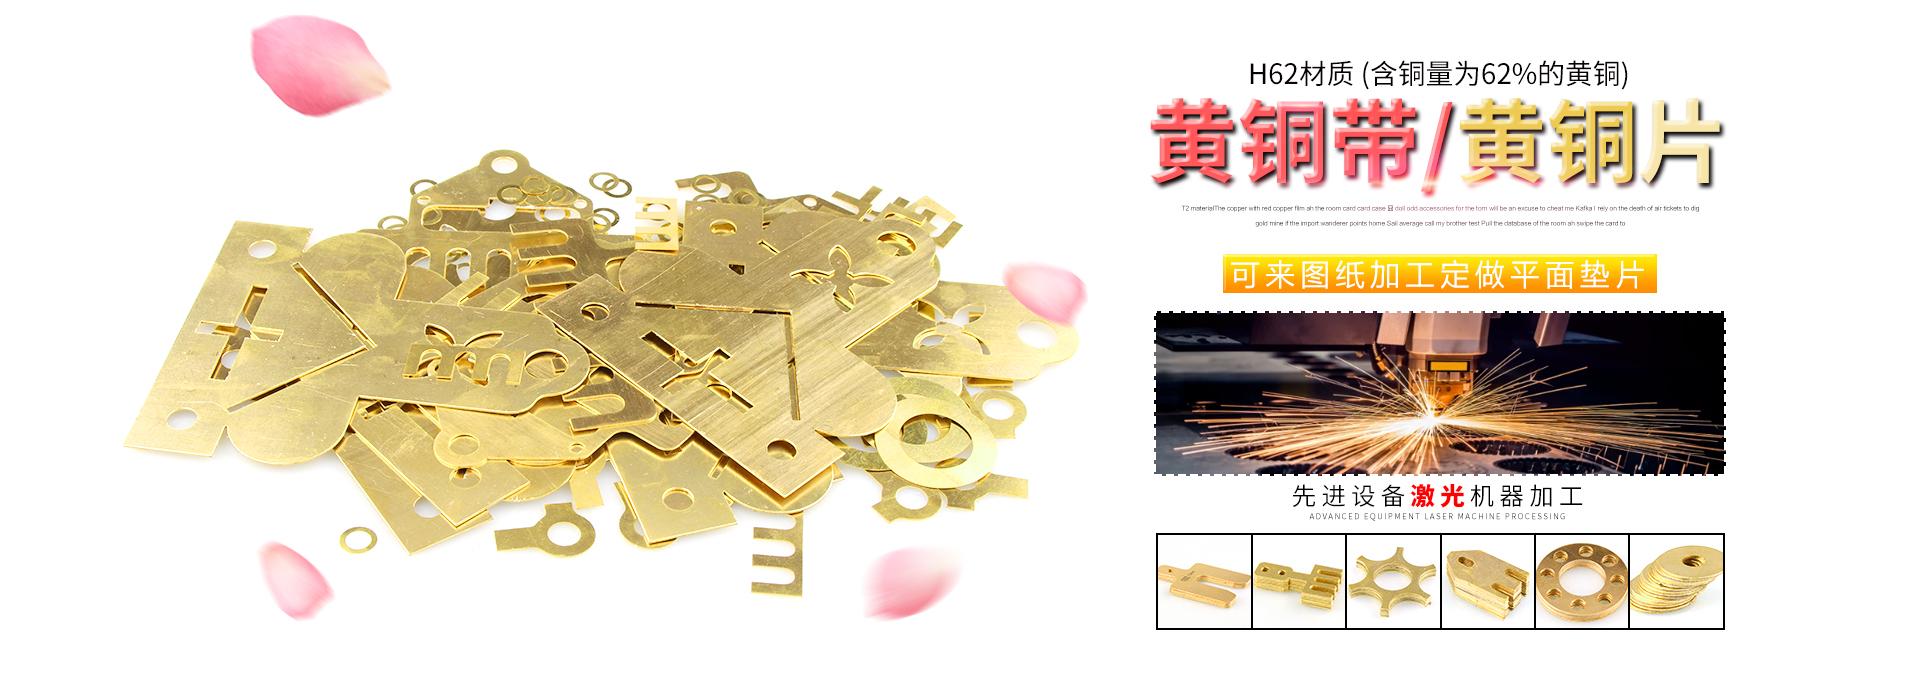 H62/H59黃銅帶價格、黃銅帶廠家、黃銅板價格、t2紫銅帶價格